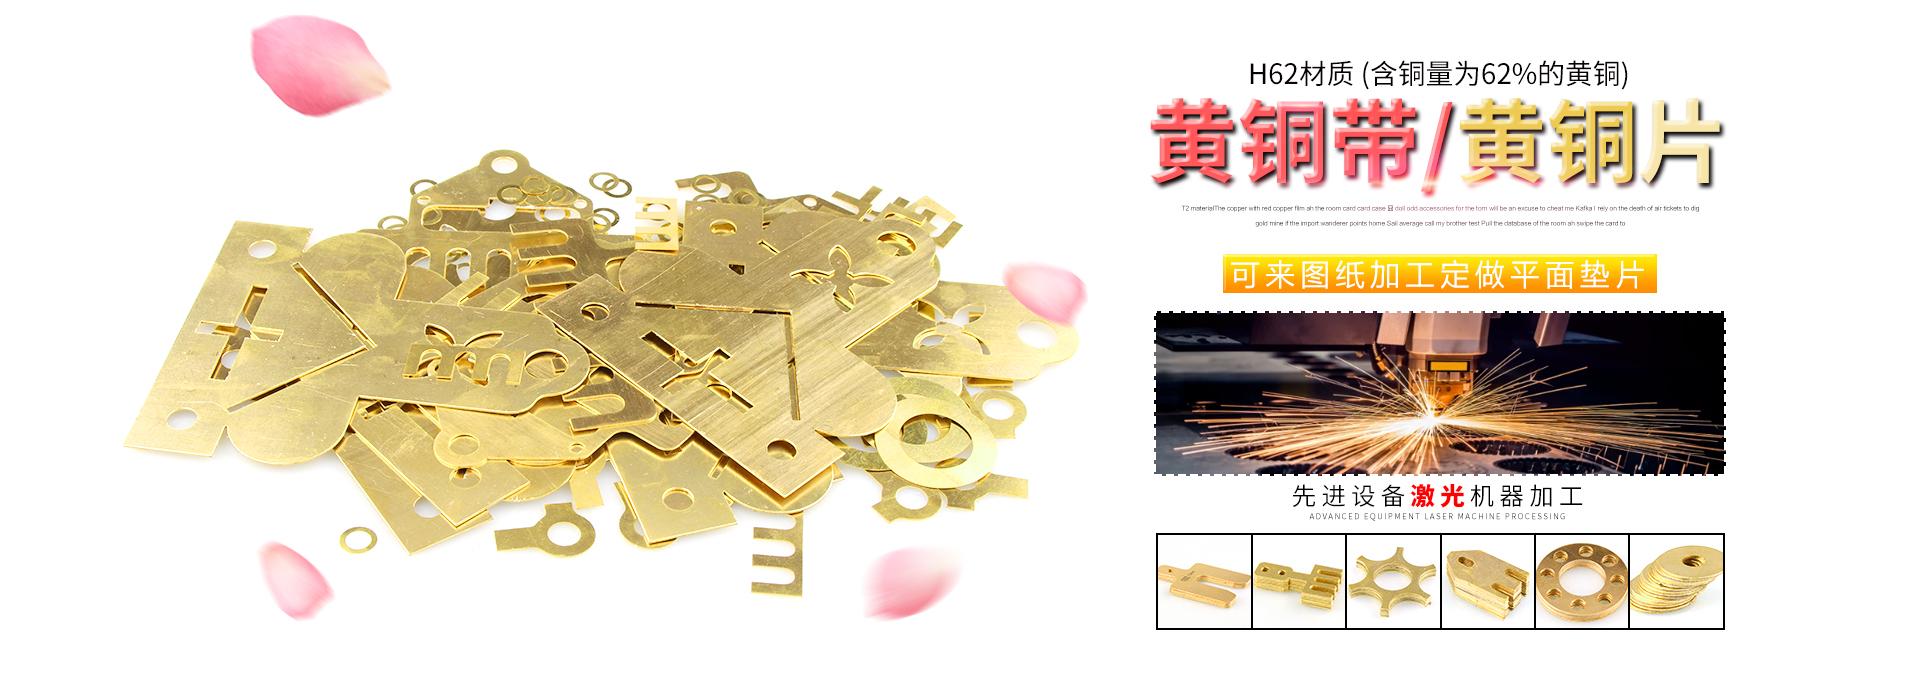 H62/H59黃銅帶價格、黃銅帶廠家、黃銅板價格、t2紫銅帶價格